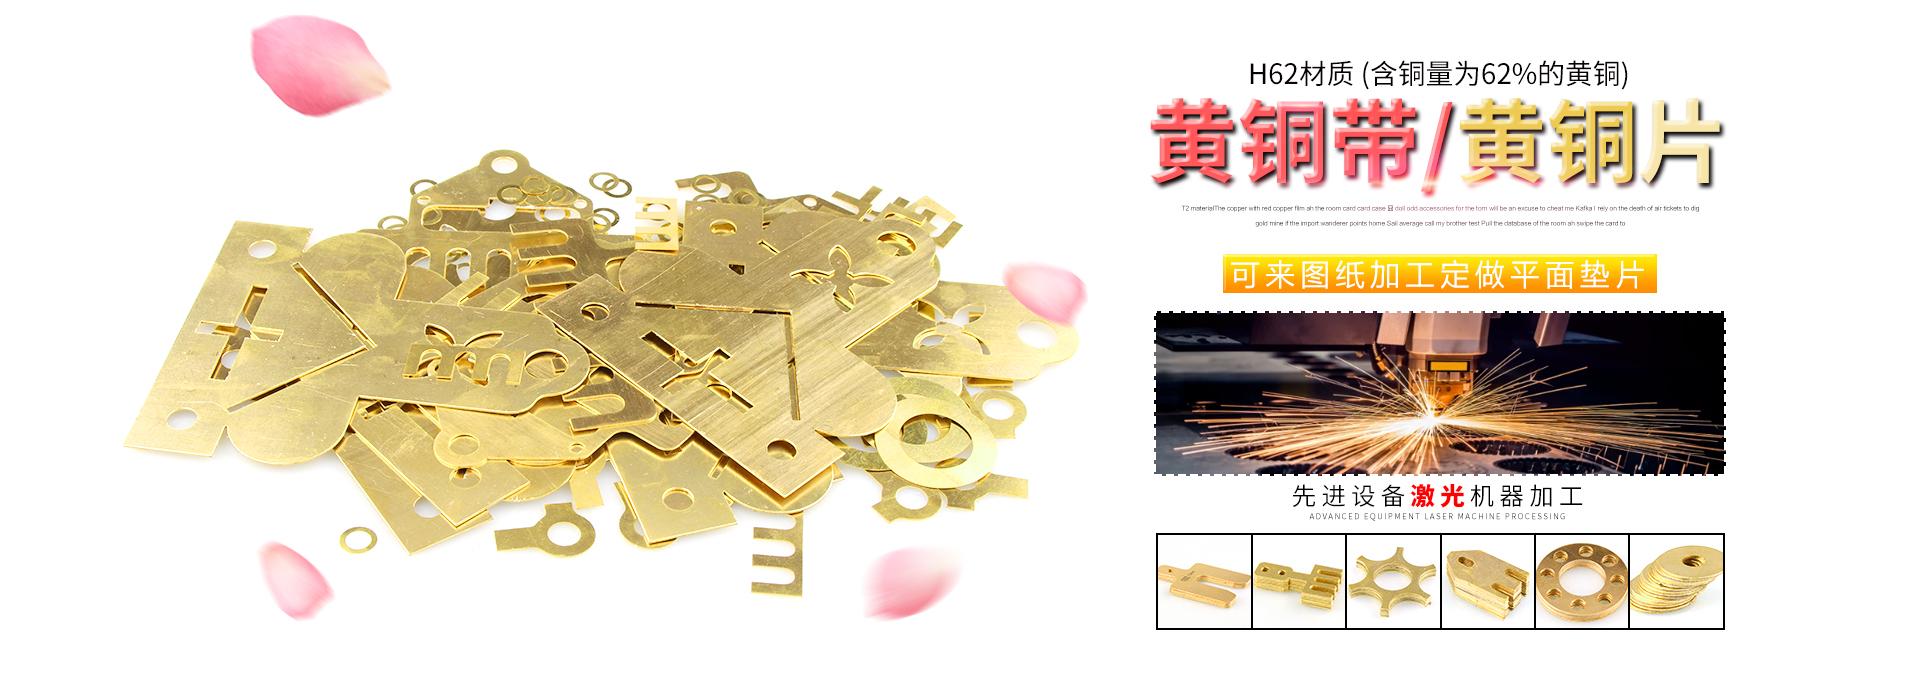 H62/H59黃銅帶價格、黃銅帶廠家、黃銅板價格、t2紫銅帶價格